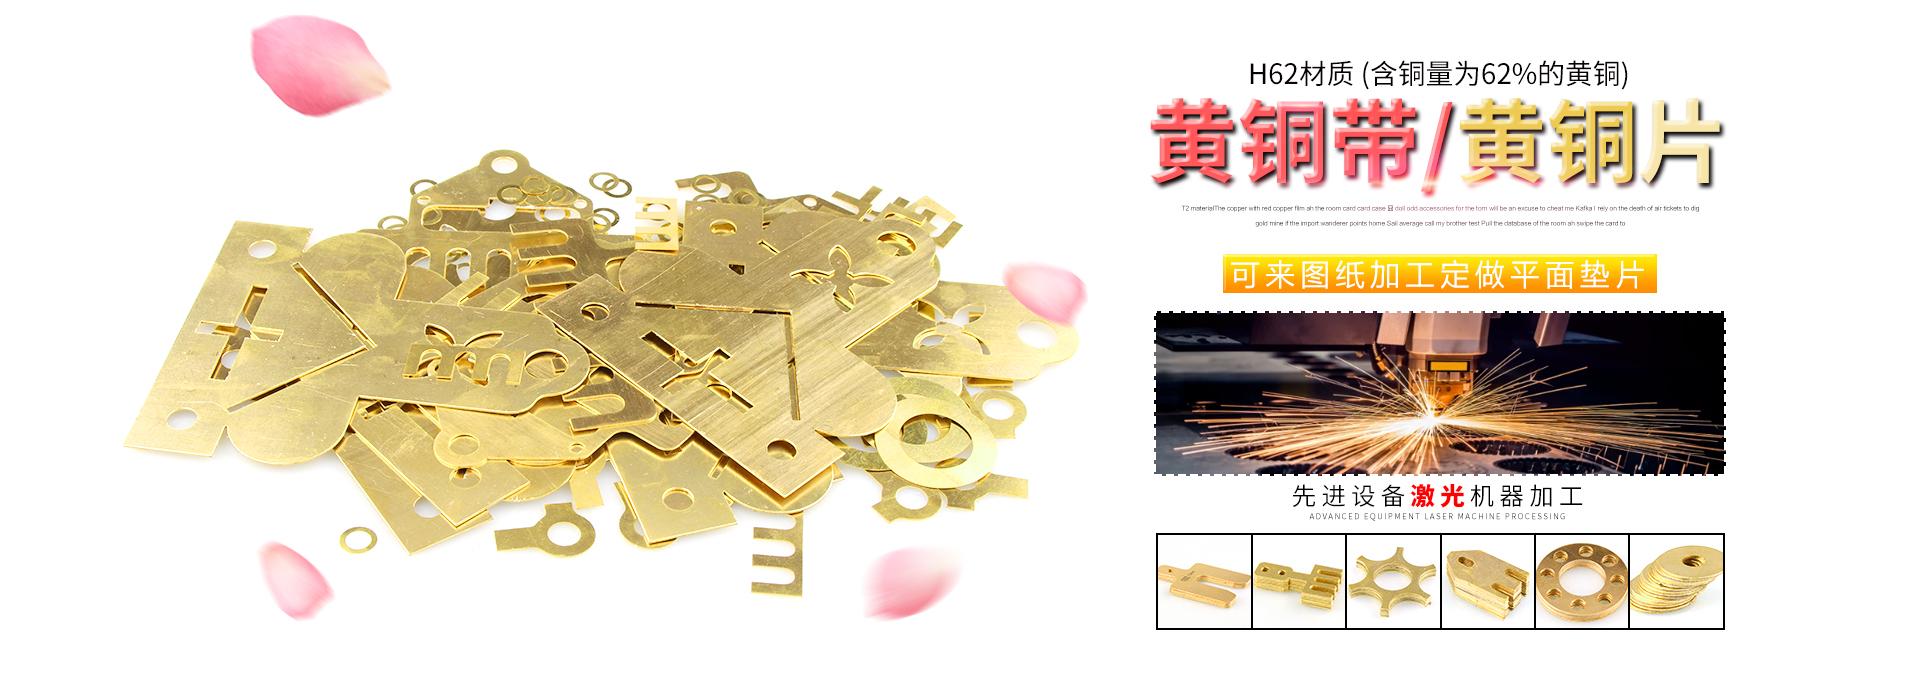 H62/H59黃銅帶價格、黃銅帶廠家、黃銅板價格、t2紫銅帶價格